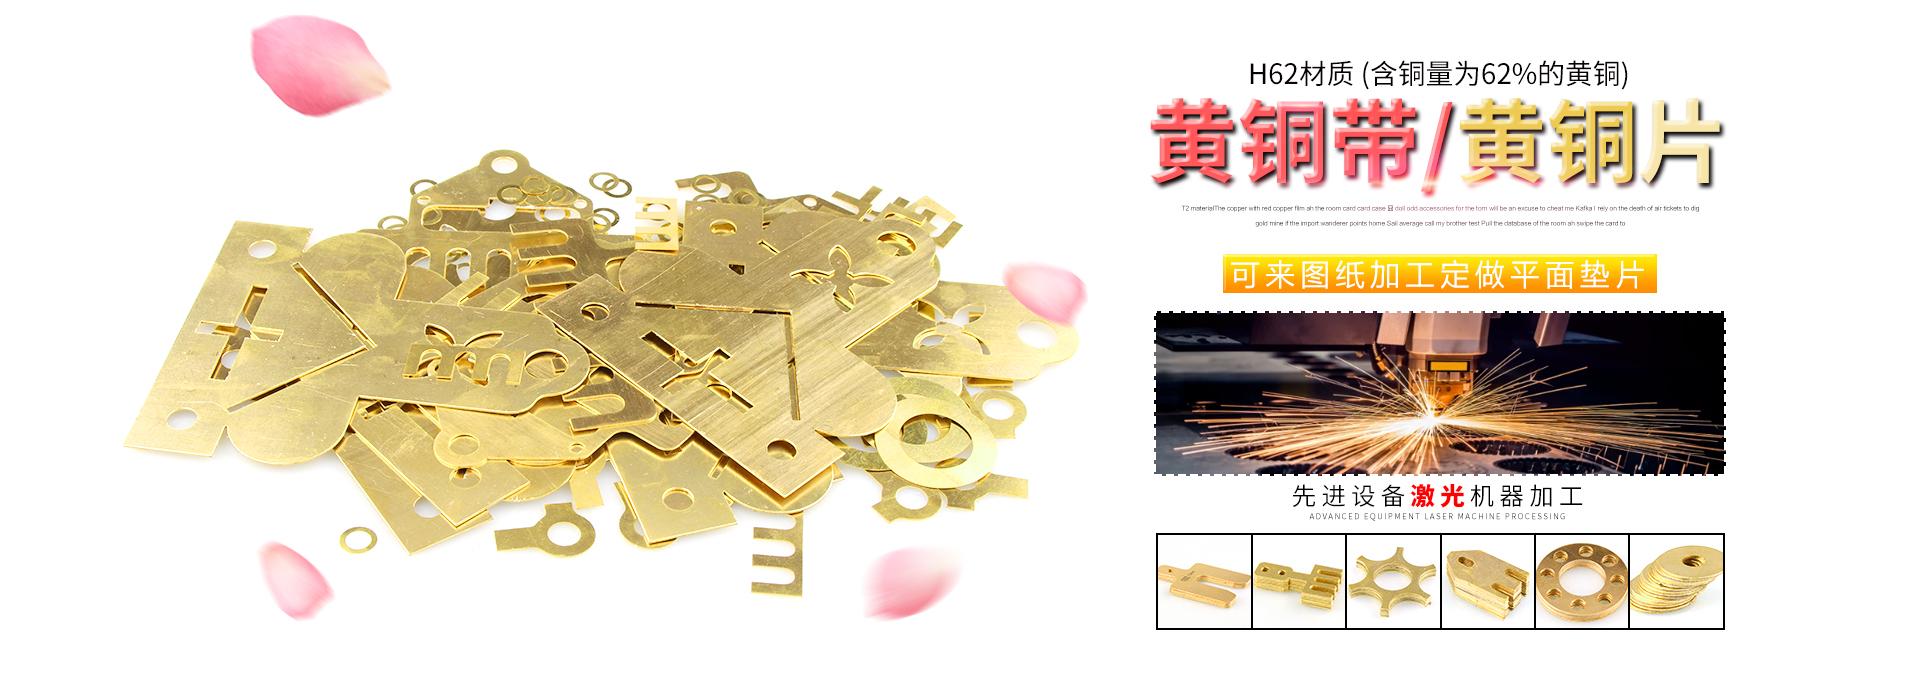 H62/H59黃銅帶價格、黃銅帶廠家、黃銅板價格、t2紫銅帶價格